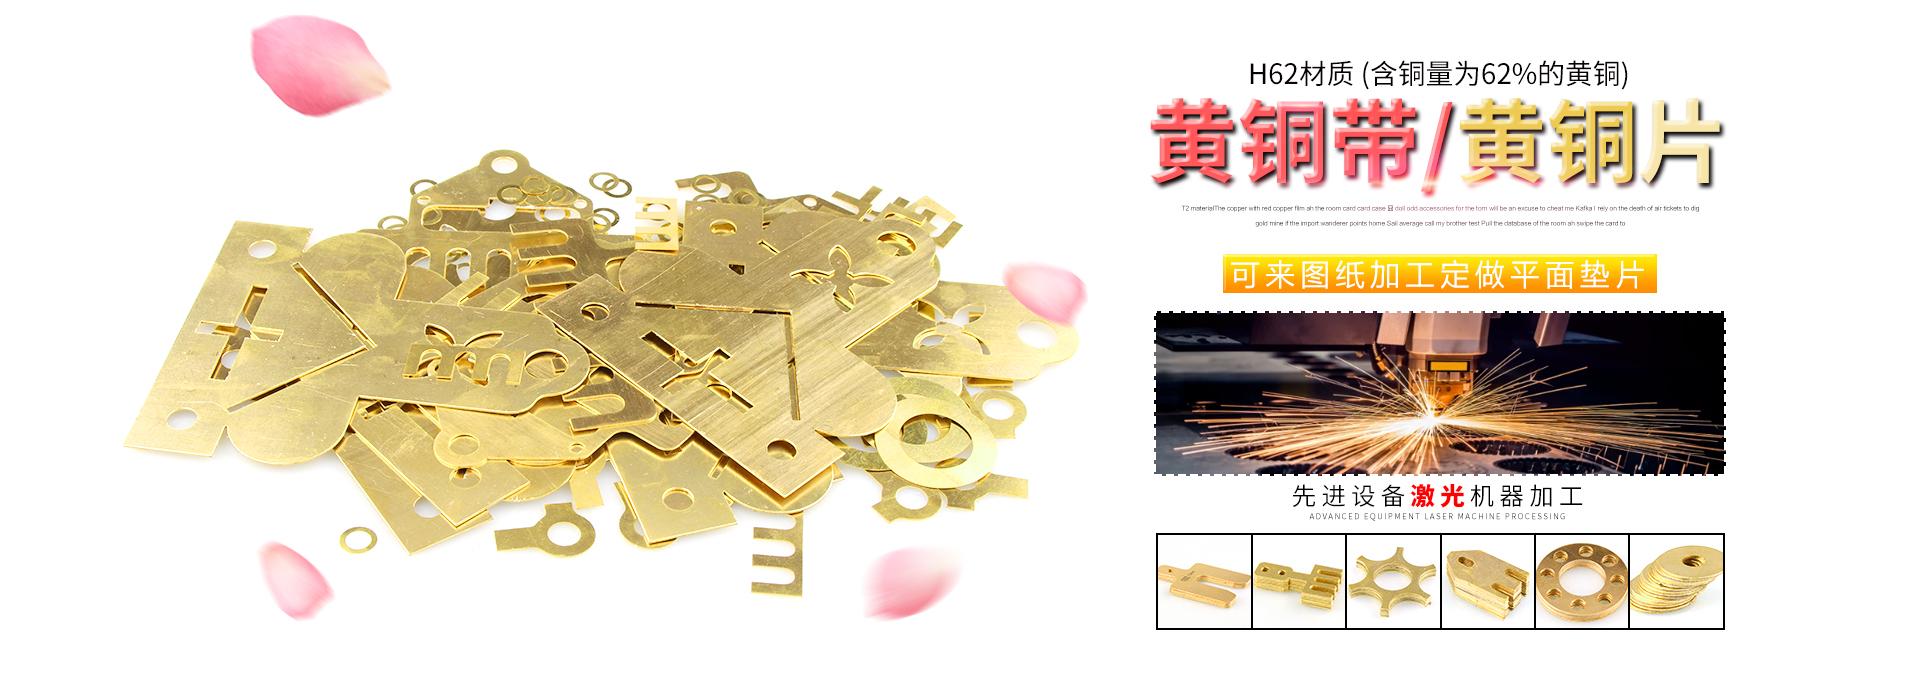 H62/H59黃銅帶價格、黃銅帶廠家、黃銅板價格、t2紫銅帶價格